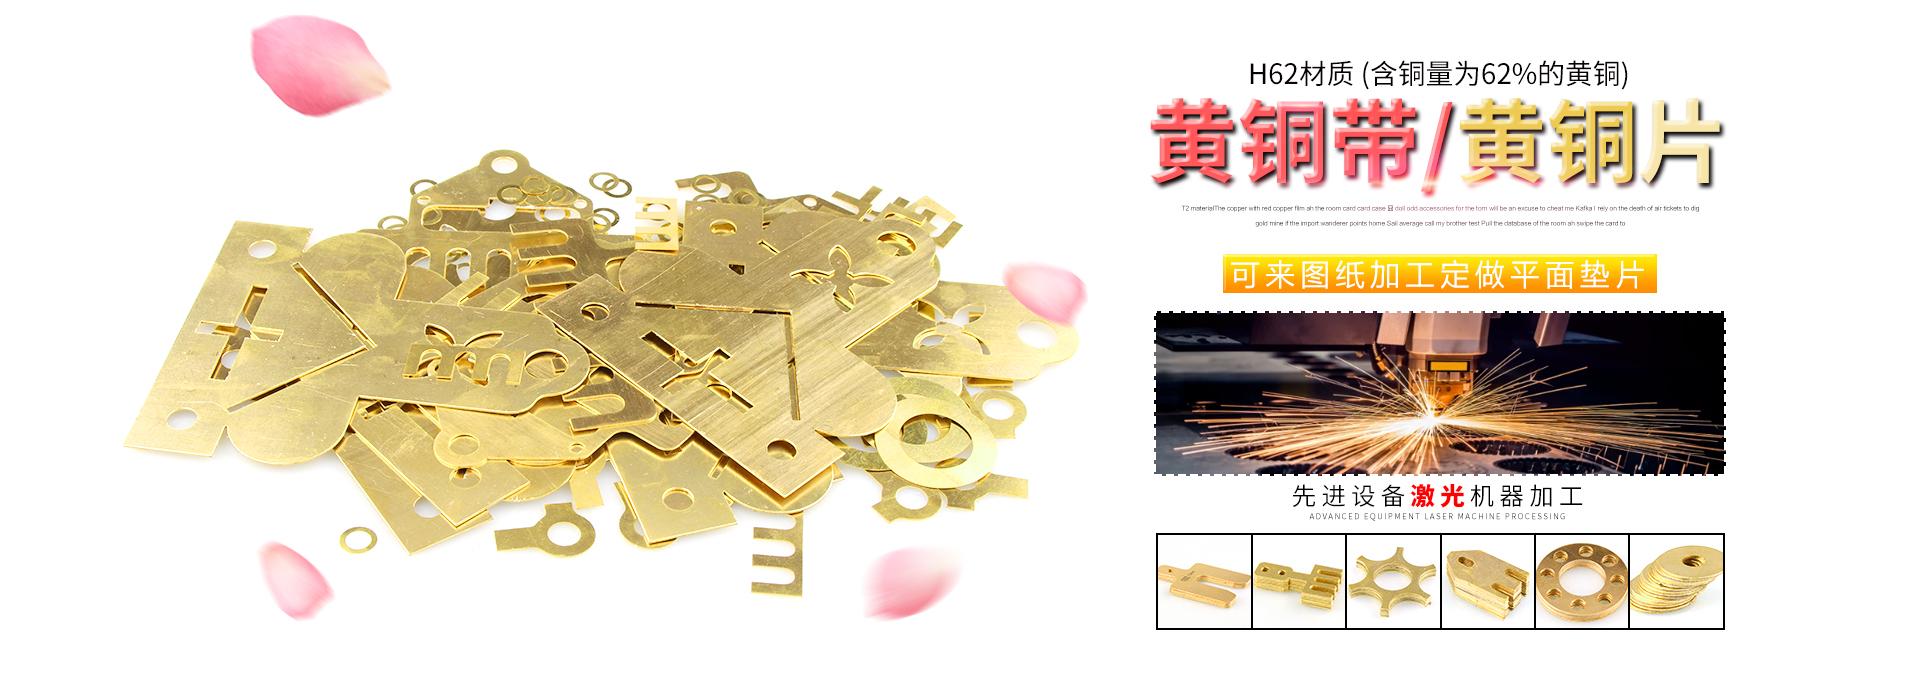 H62/H59黃銅帶價格、黃銅帶廠家、黃銅板價格、t2紫銅帶價格